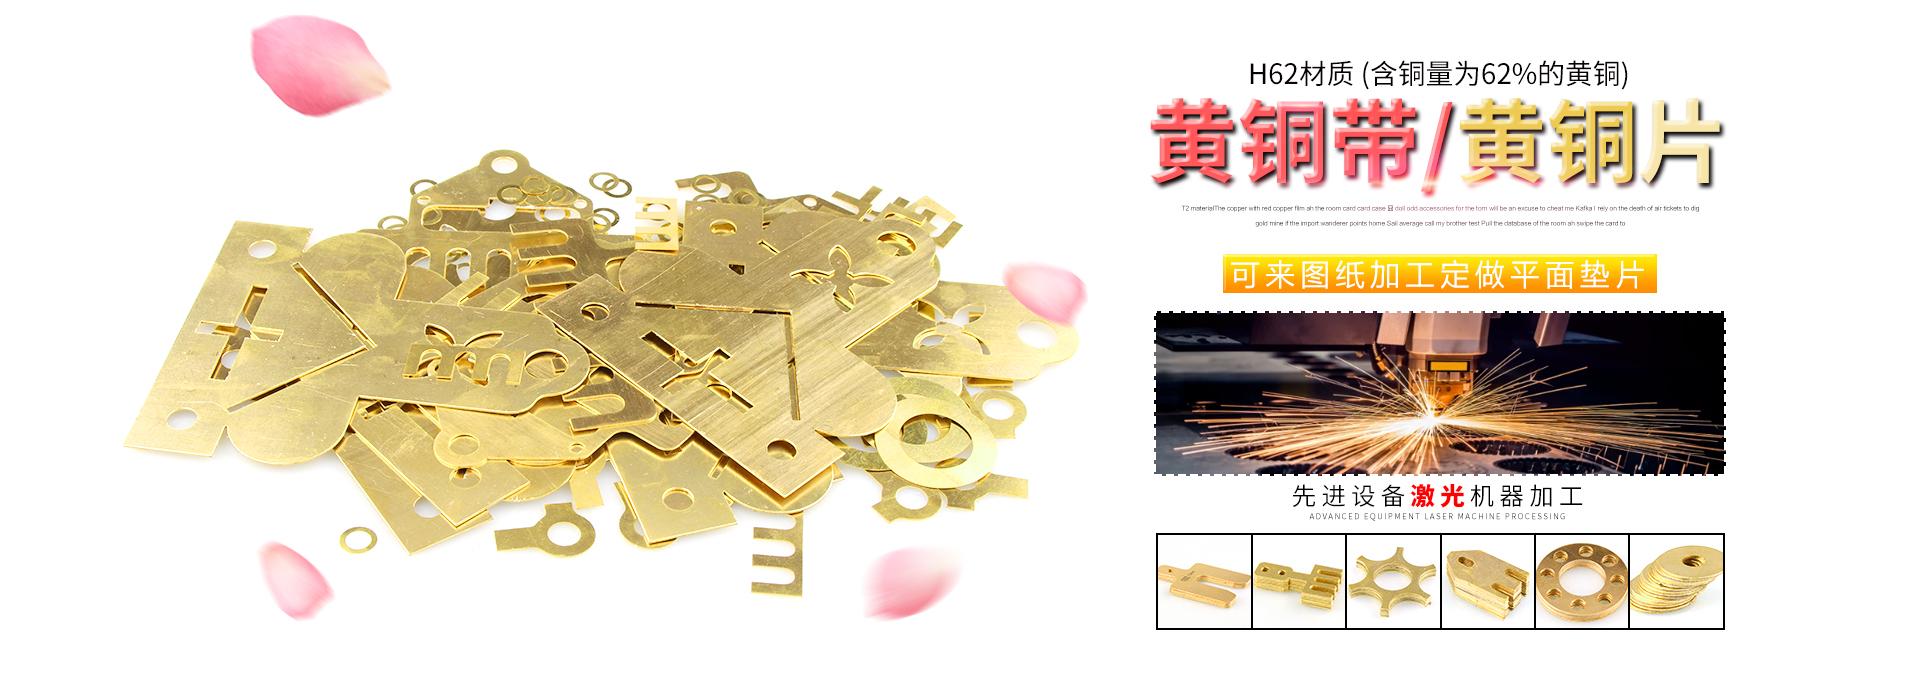 H62/H59黃銅帶價格、黃銅帶廠家、黃銅板價格、t2紫銅帶價格